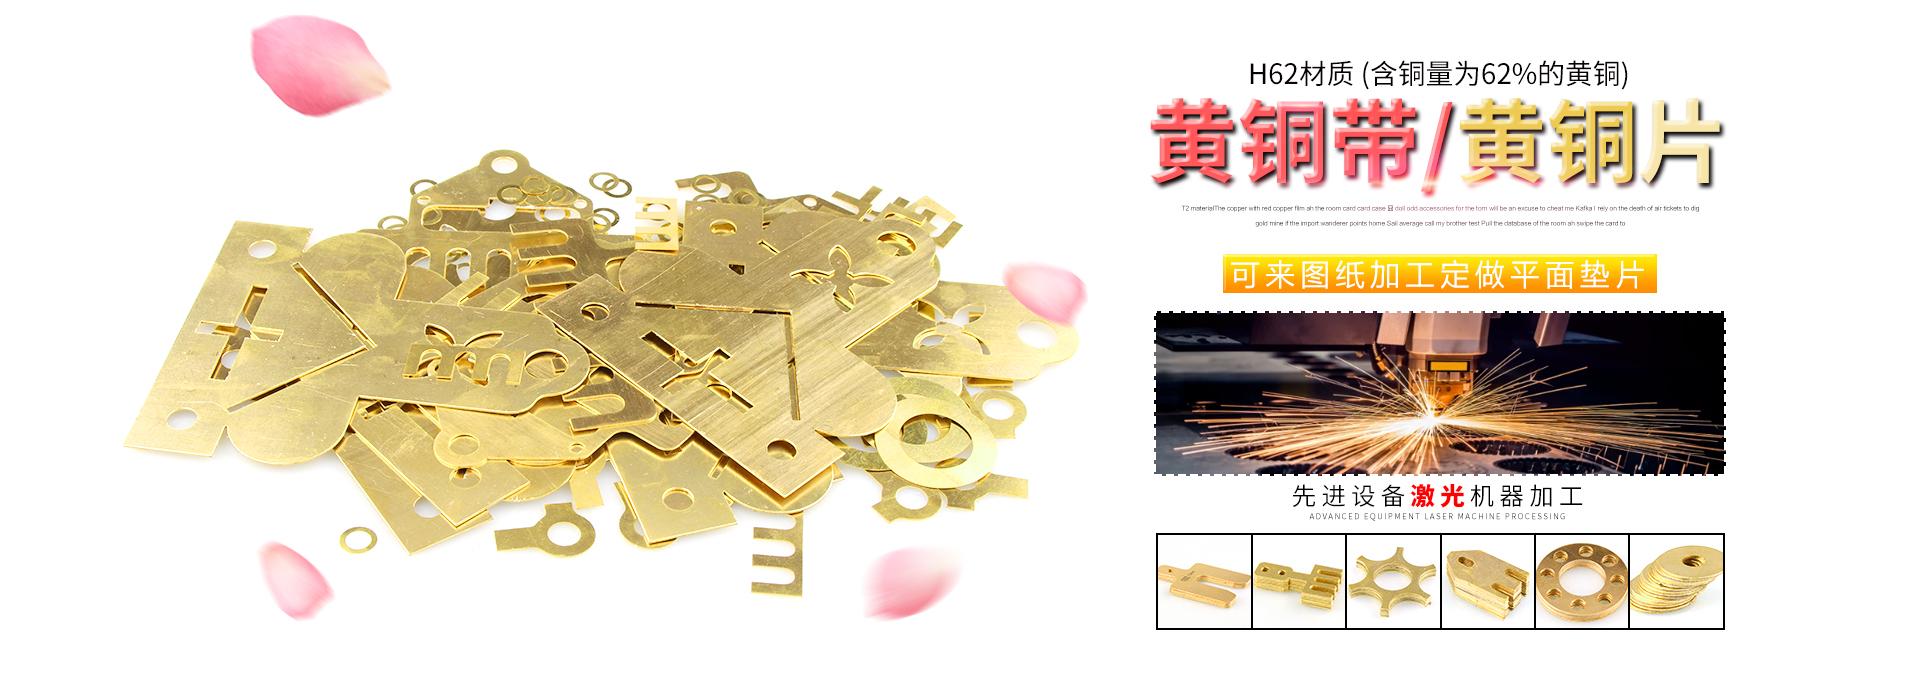 H62/H59黃銅帶價格、黃銅帶廠家、黃銅板價格、t2紫銅帶價格